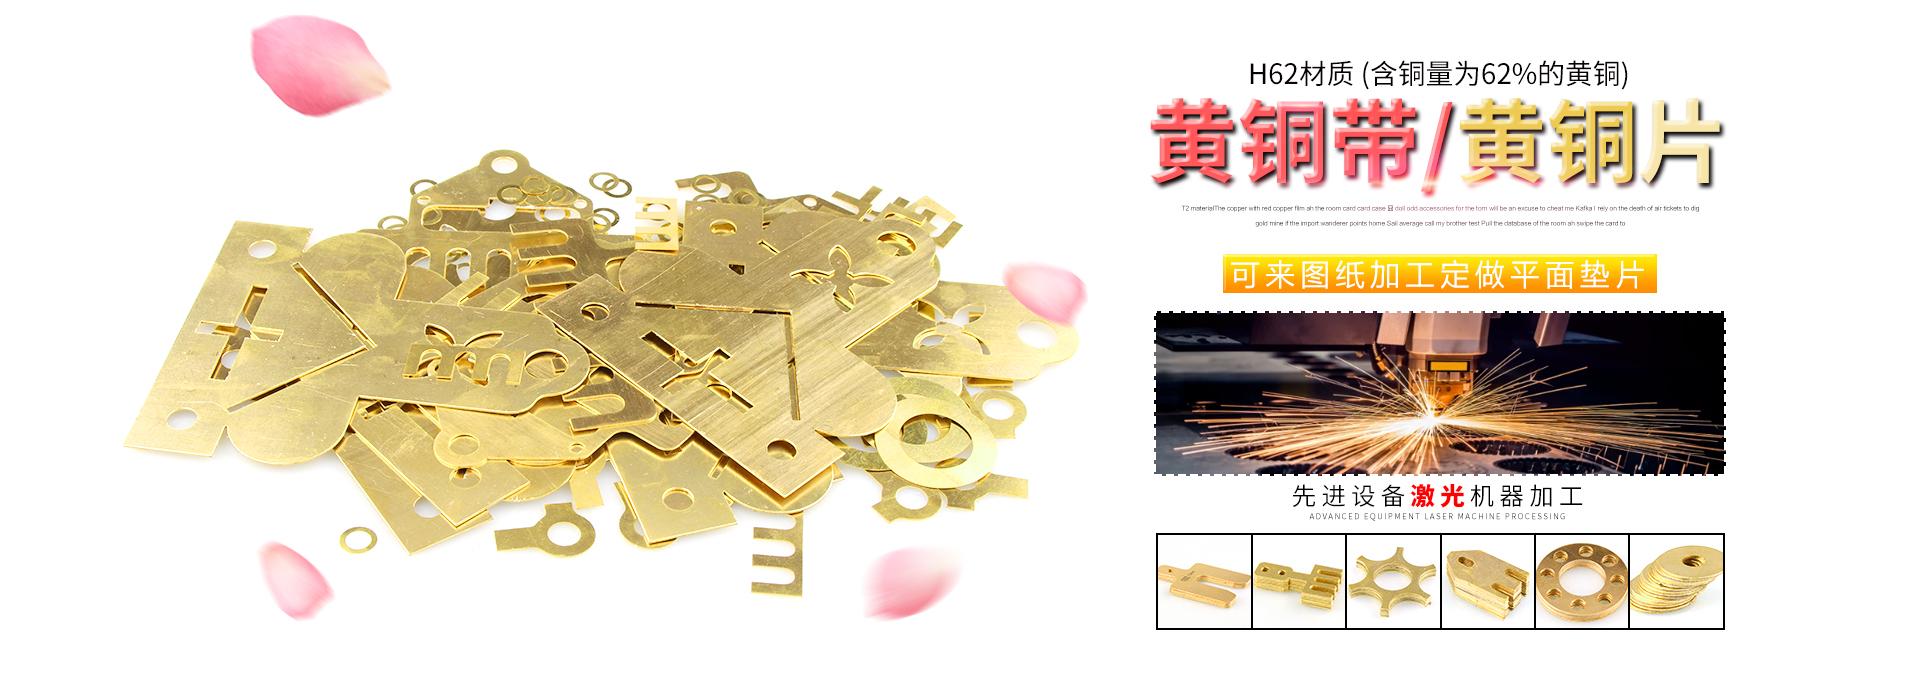 H62/H59黃銅帶價格、黃銅帶廠家、黃銅板價格、t2紫銅帶價格